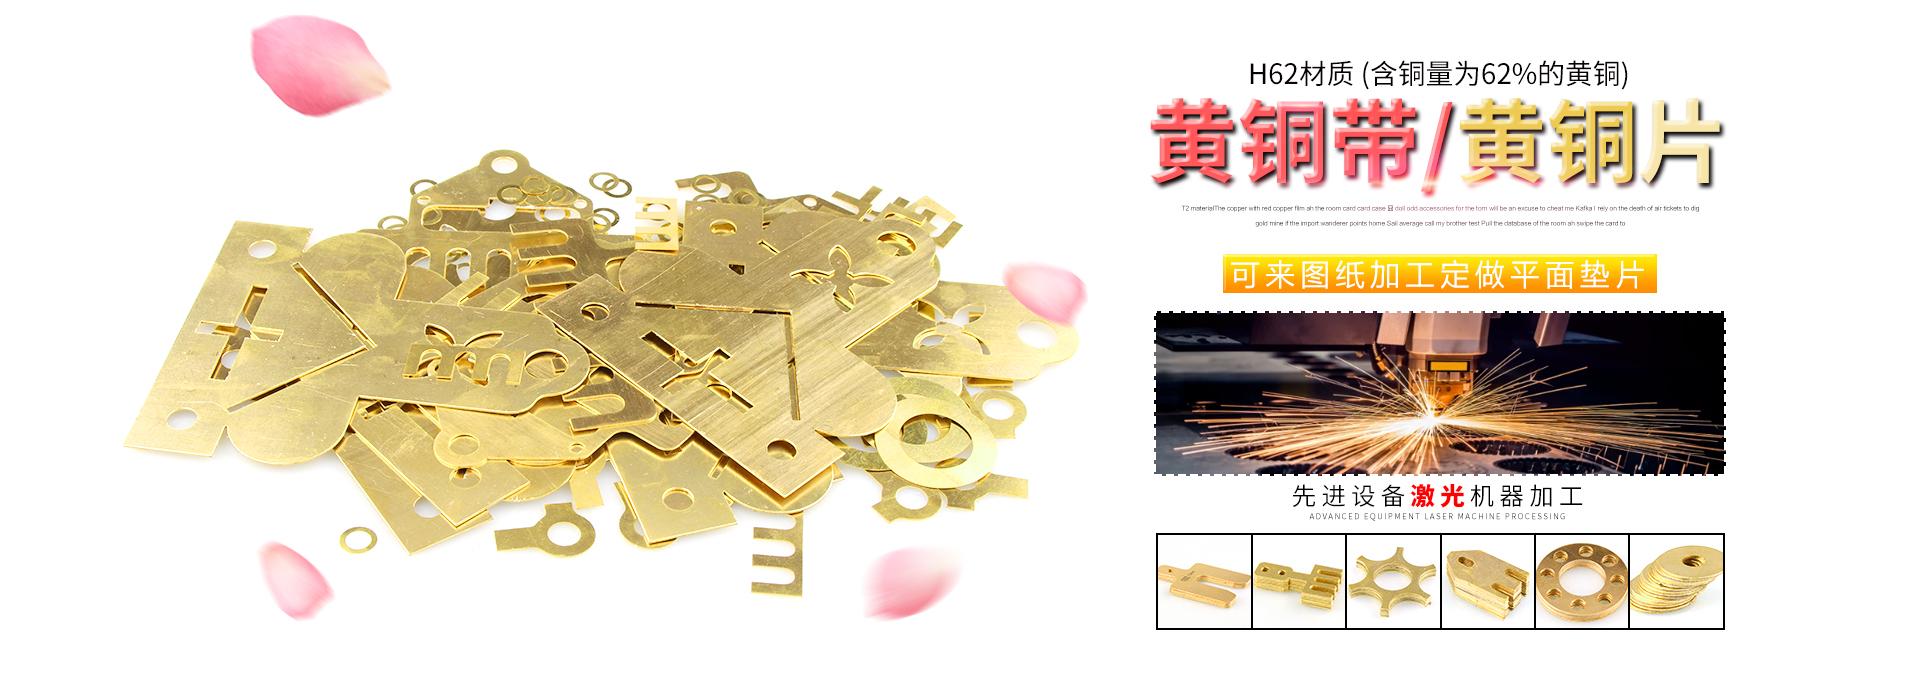 H62/H59黃銅帶價格、黃銅帶廠家、黃銅板價格、t2紫銅帶價格